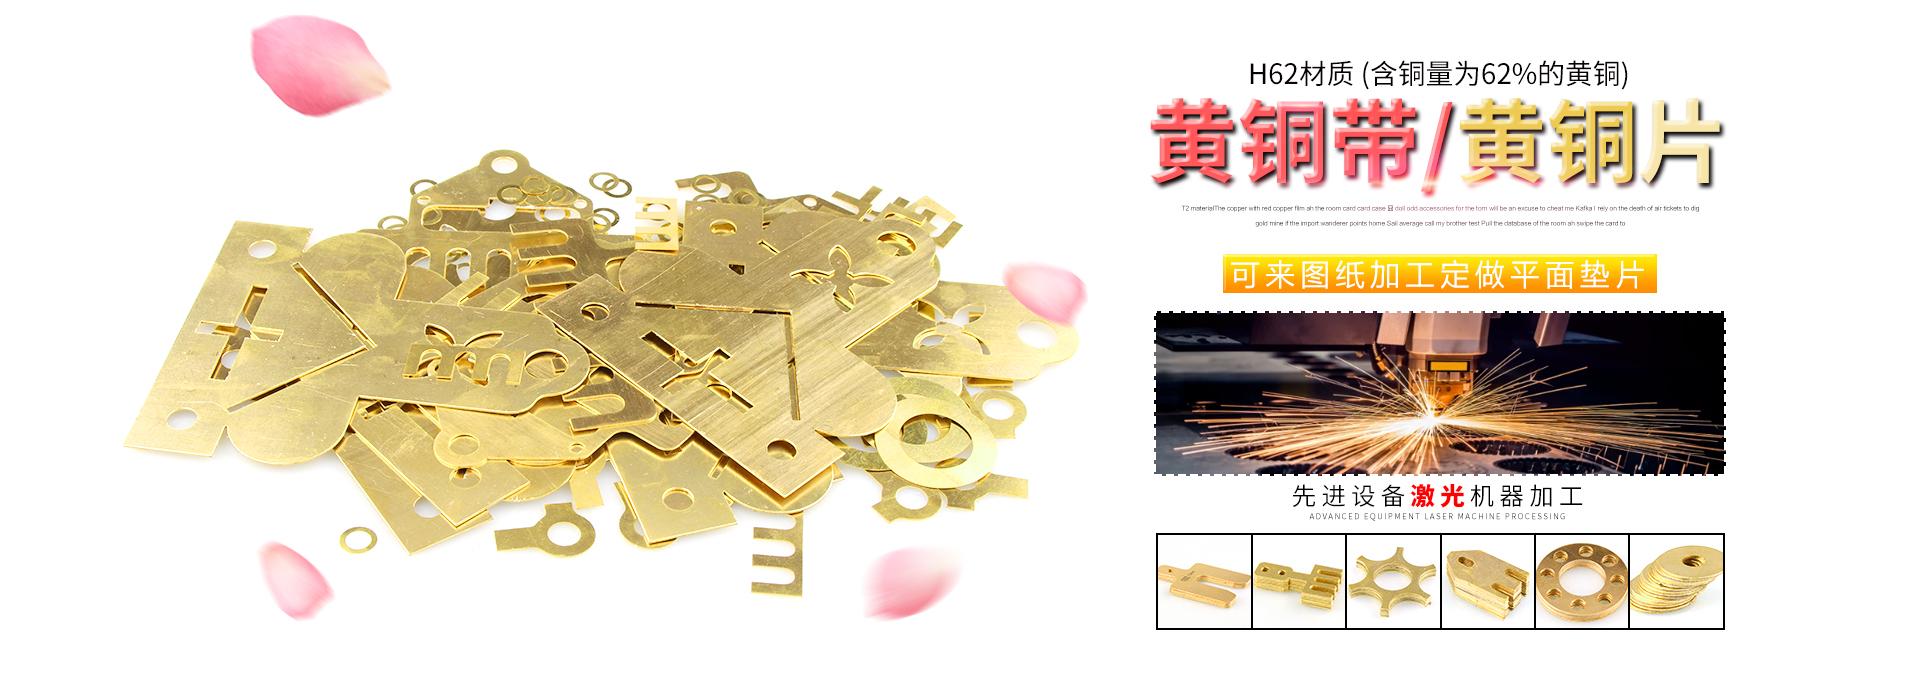 H62/H59黃銅帶價格、黃銅帶廠家、黃銅板價格、t2紫銅帶價格